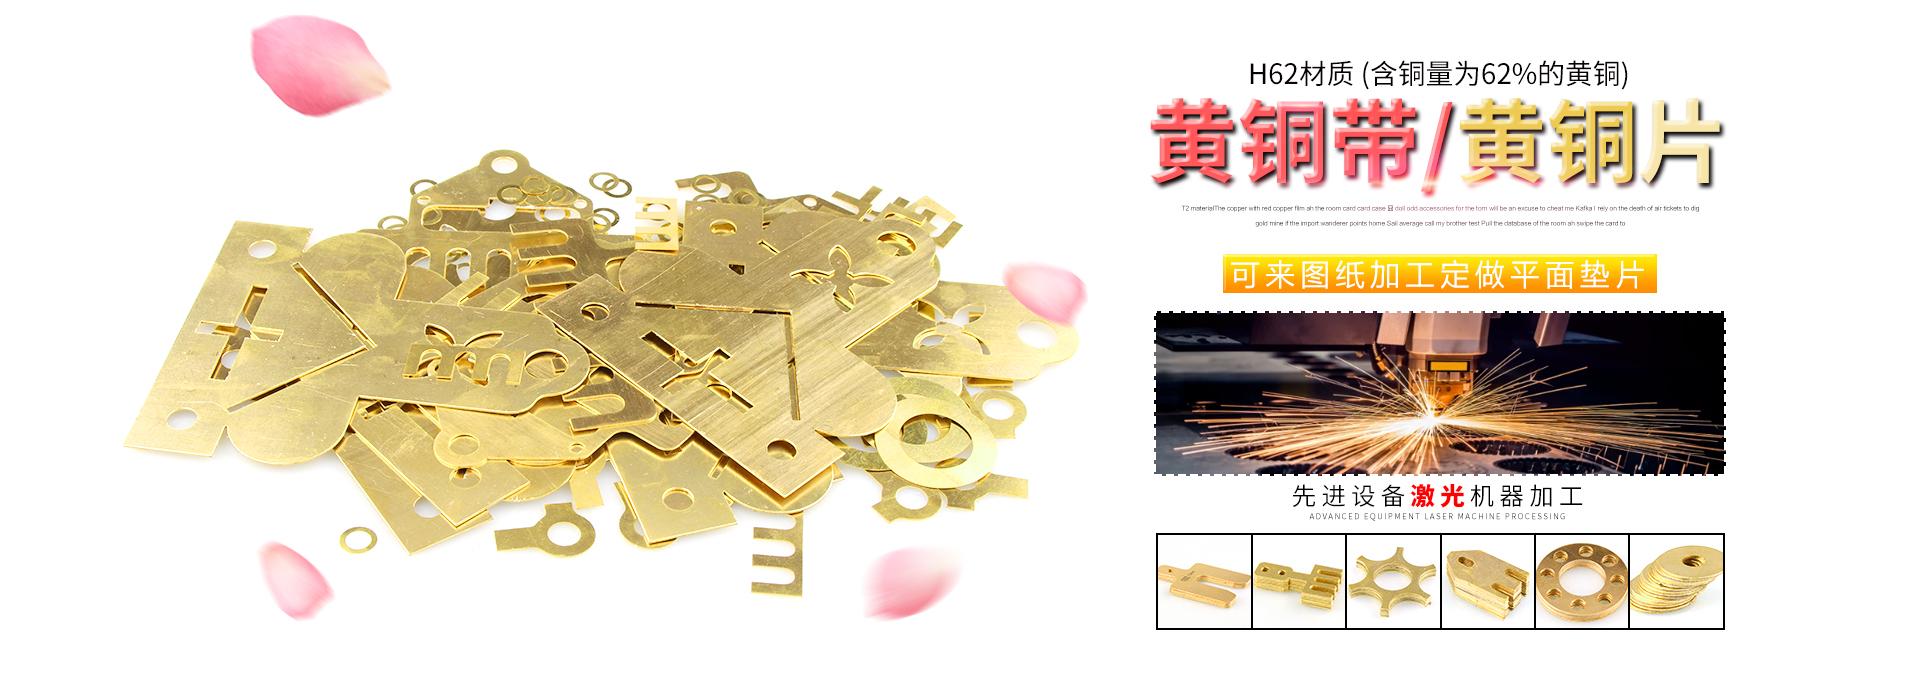 H62/H59黃銅帶價格、黃銅帶廠家、黃銅板價格、t2紫銅帶價格